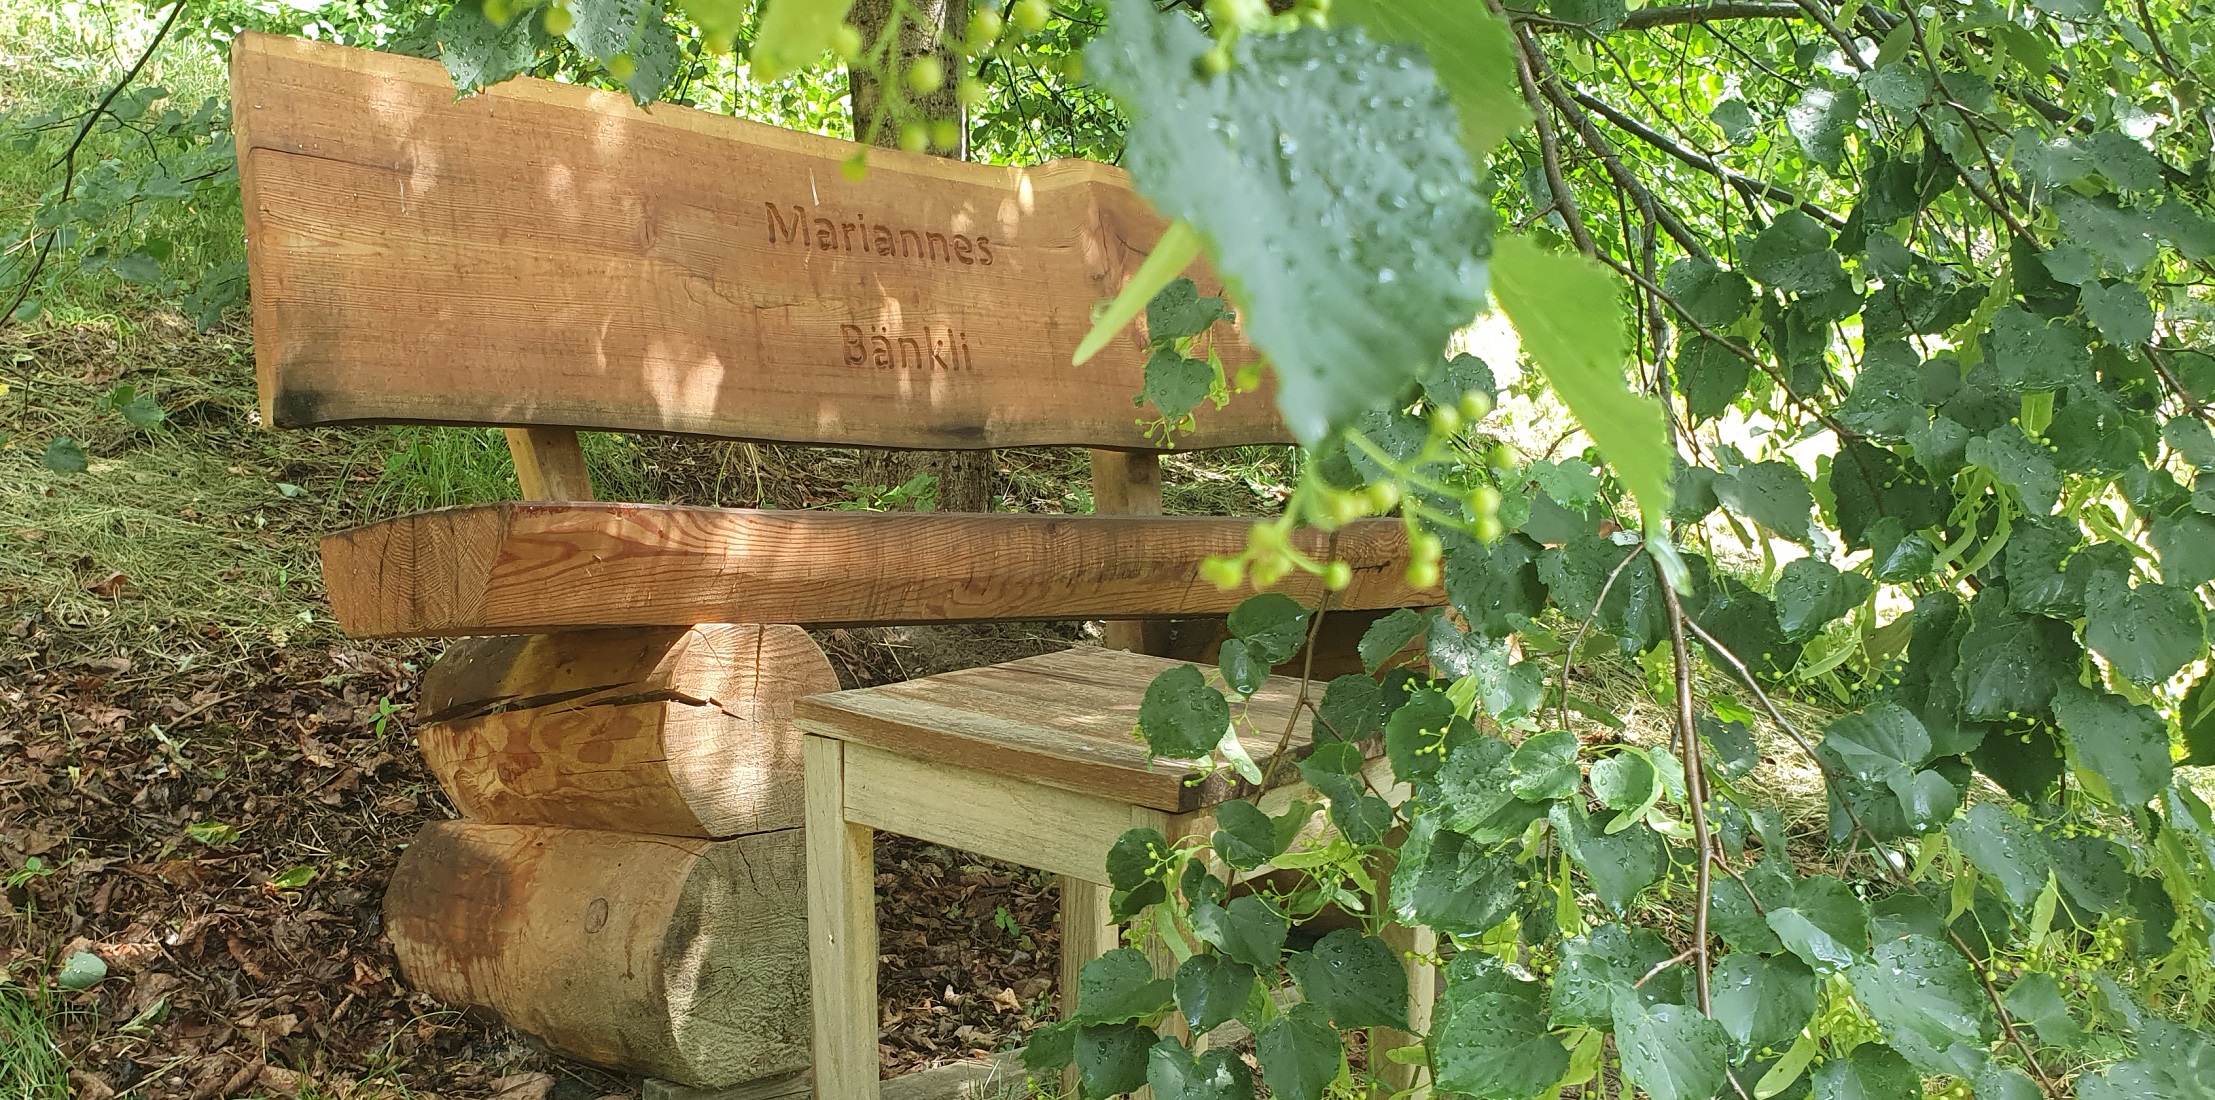 Sitzplätze im Garten sind wichtig, um den Garten ausgiebig zu beobachten. Dieses Bänkli unter einem Lindenbaum hat Richard Wymann für seine Frau Marianne machen lassen. © GartenRadio.fm